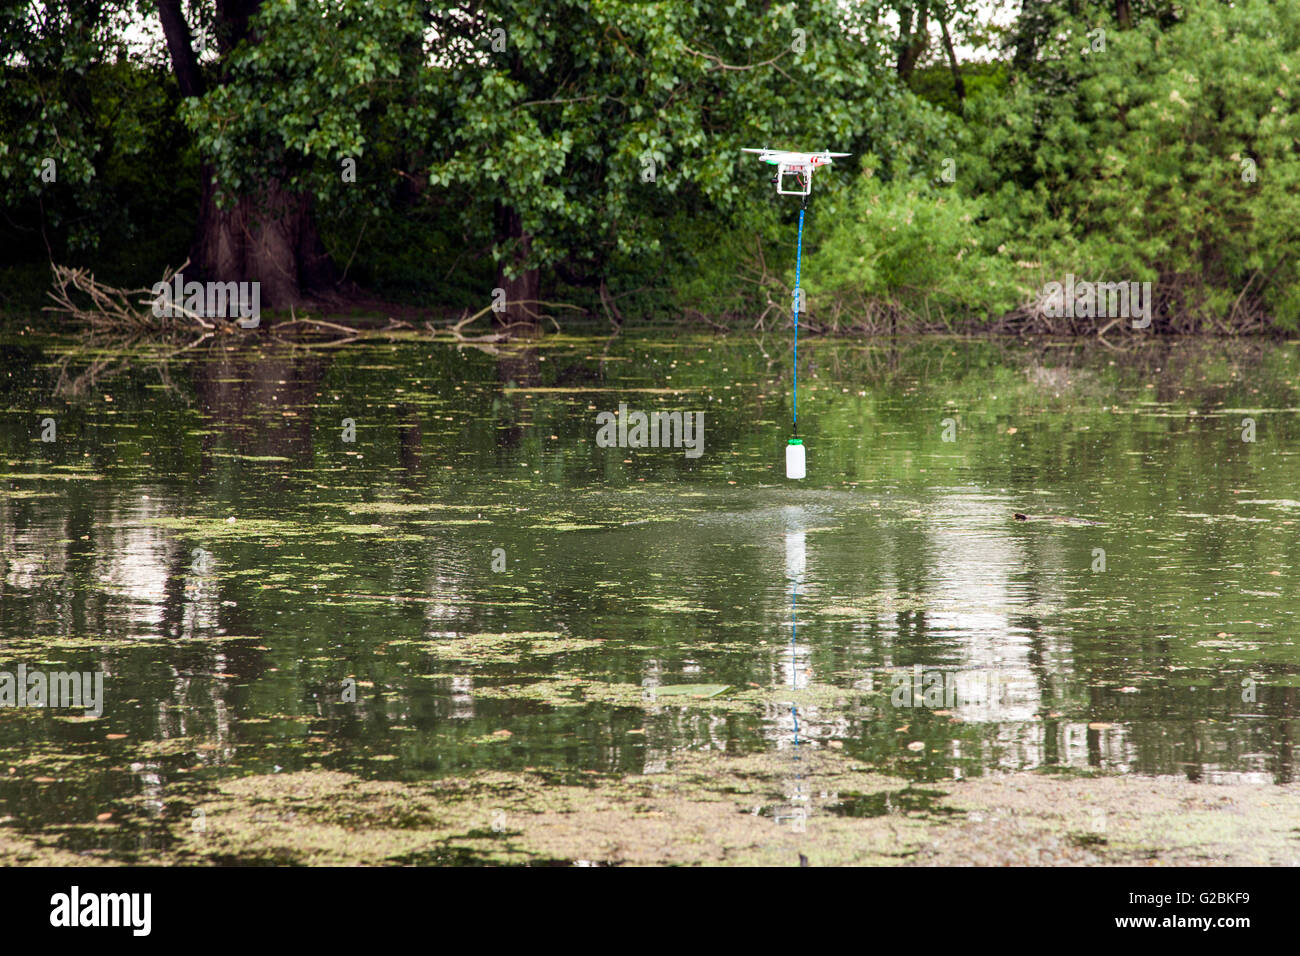 Eine Drohne nimmt eine Wasserprobe in einem Teich. Stockfoto